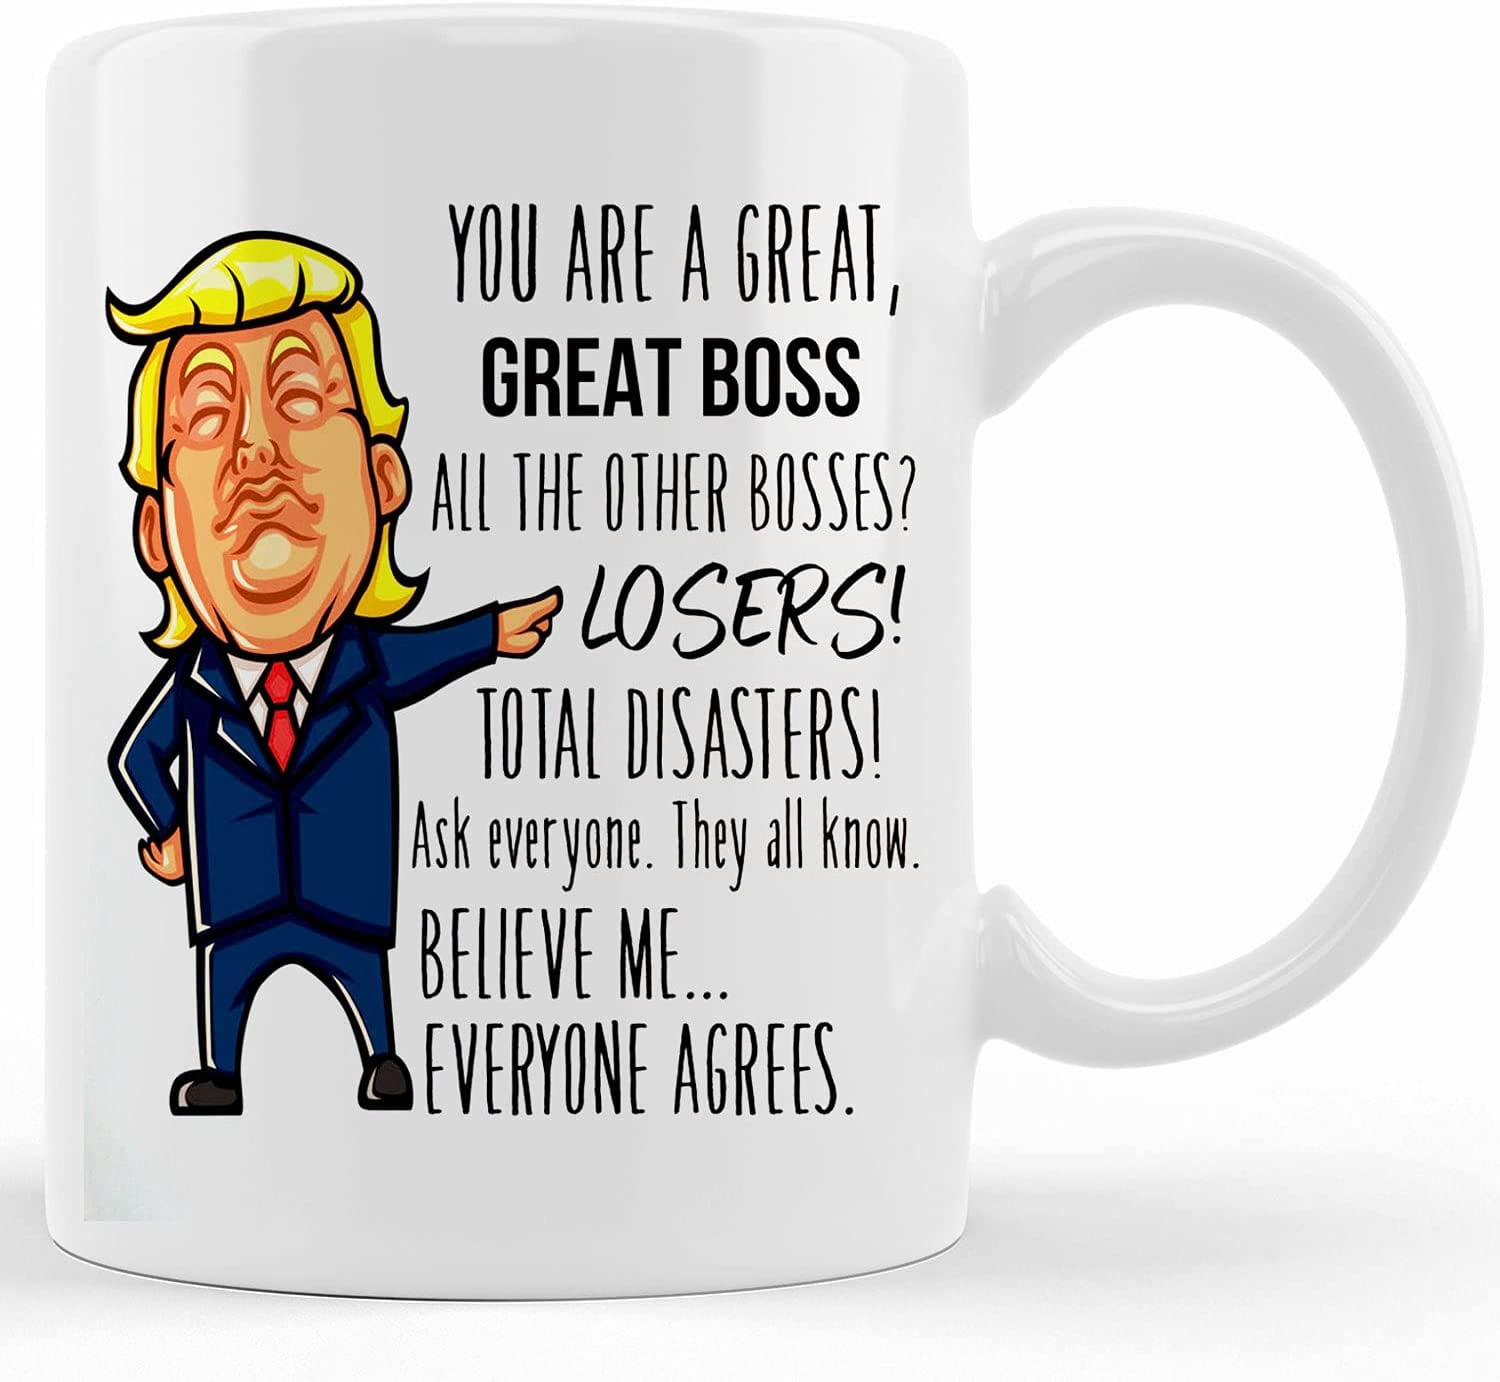 Funny Boss Gift: Donald Trump Boss Mug | Gift for Boss - Men & Women